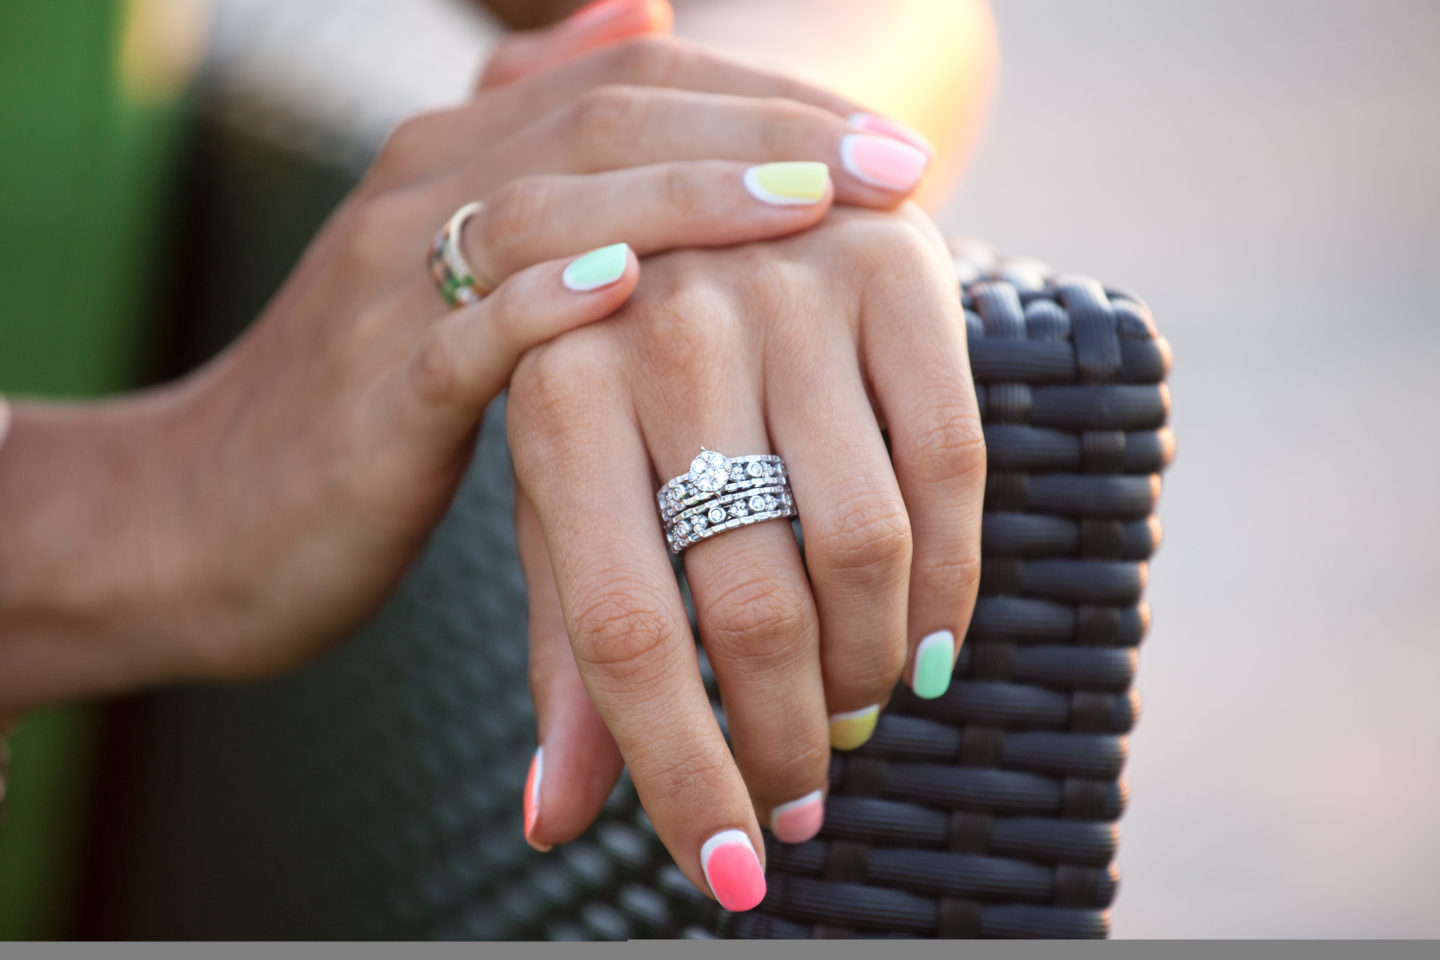 هل عليك شراء خاتم خطوبة باهظ الثمن؟ إليك ما تفضله معظم النساء